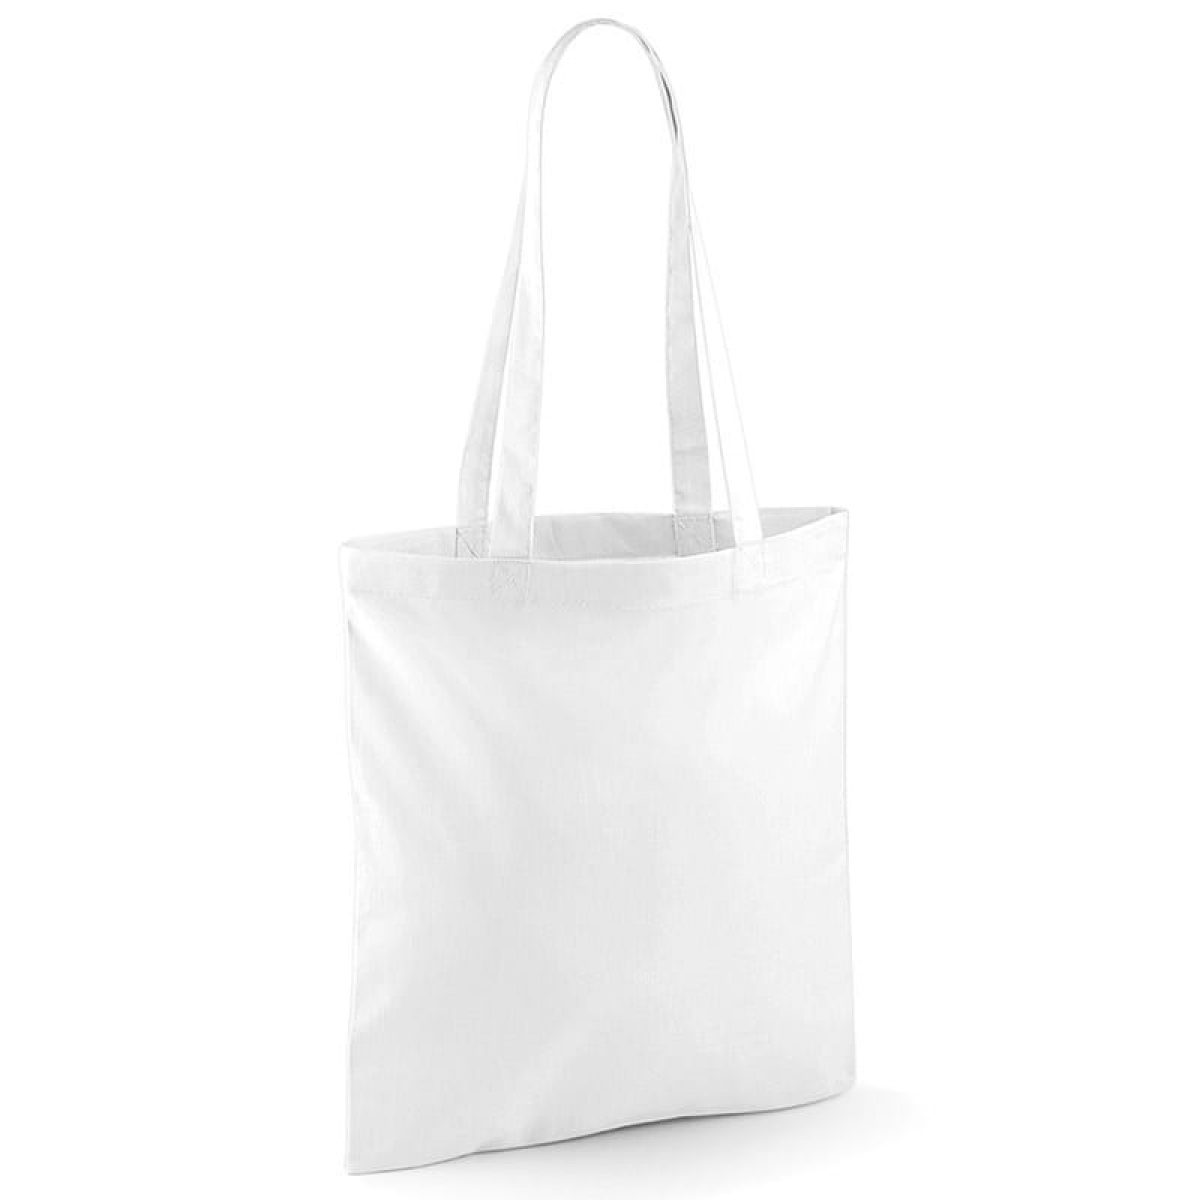 Jumbo White Carrier Bag - 100pkt - Mambo's Online Store